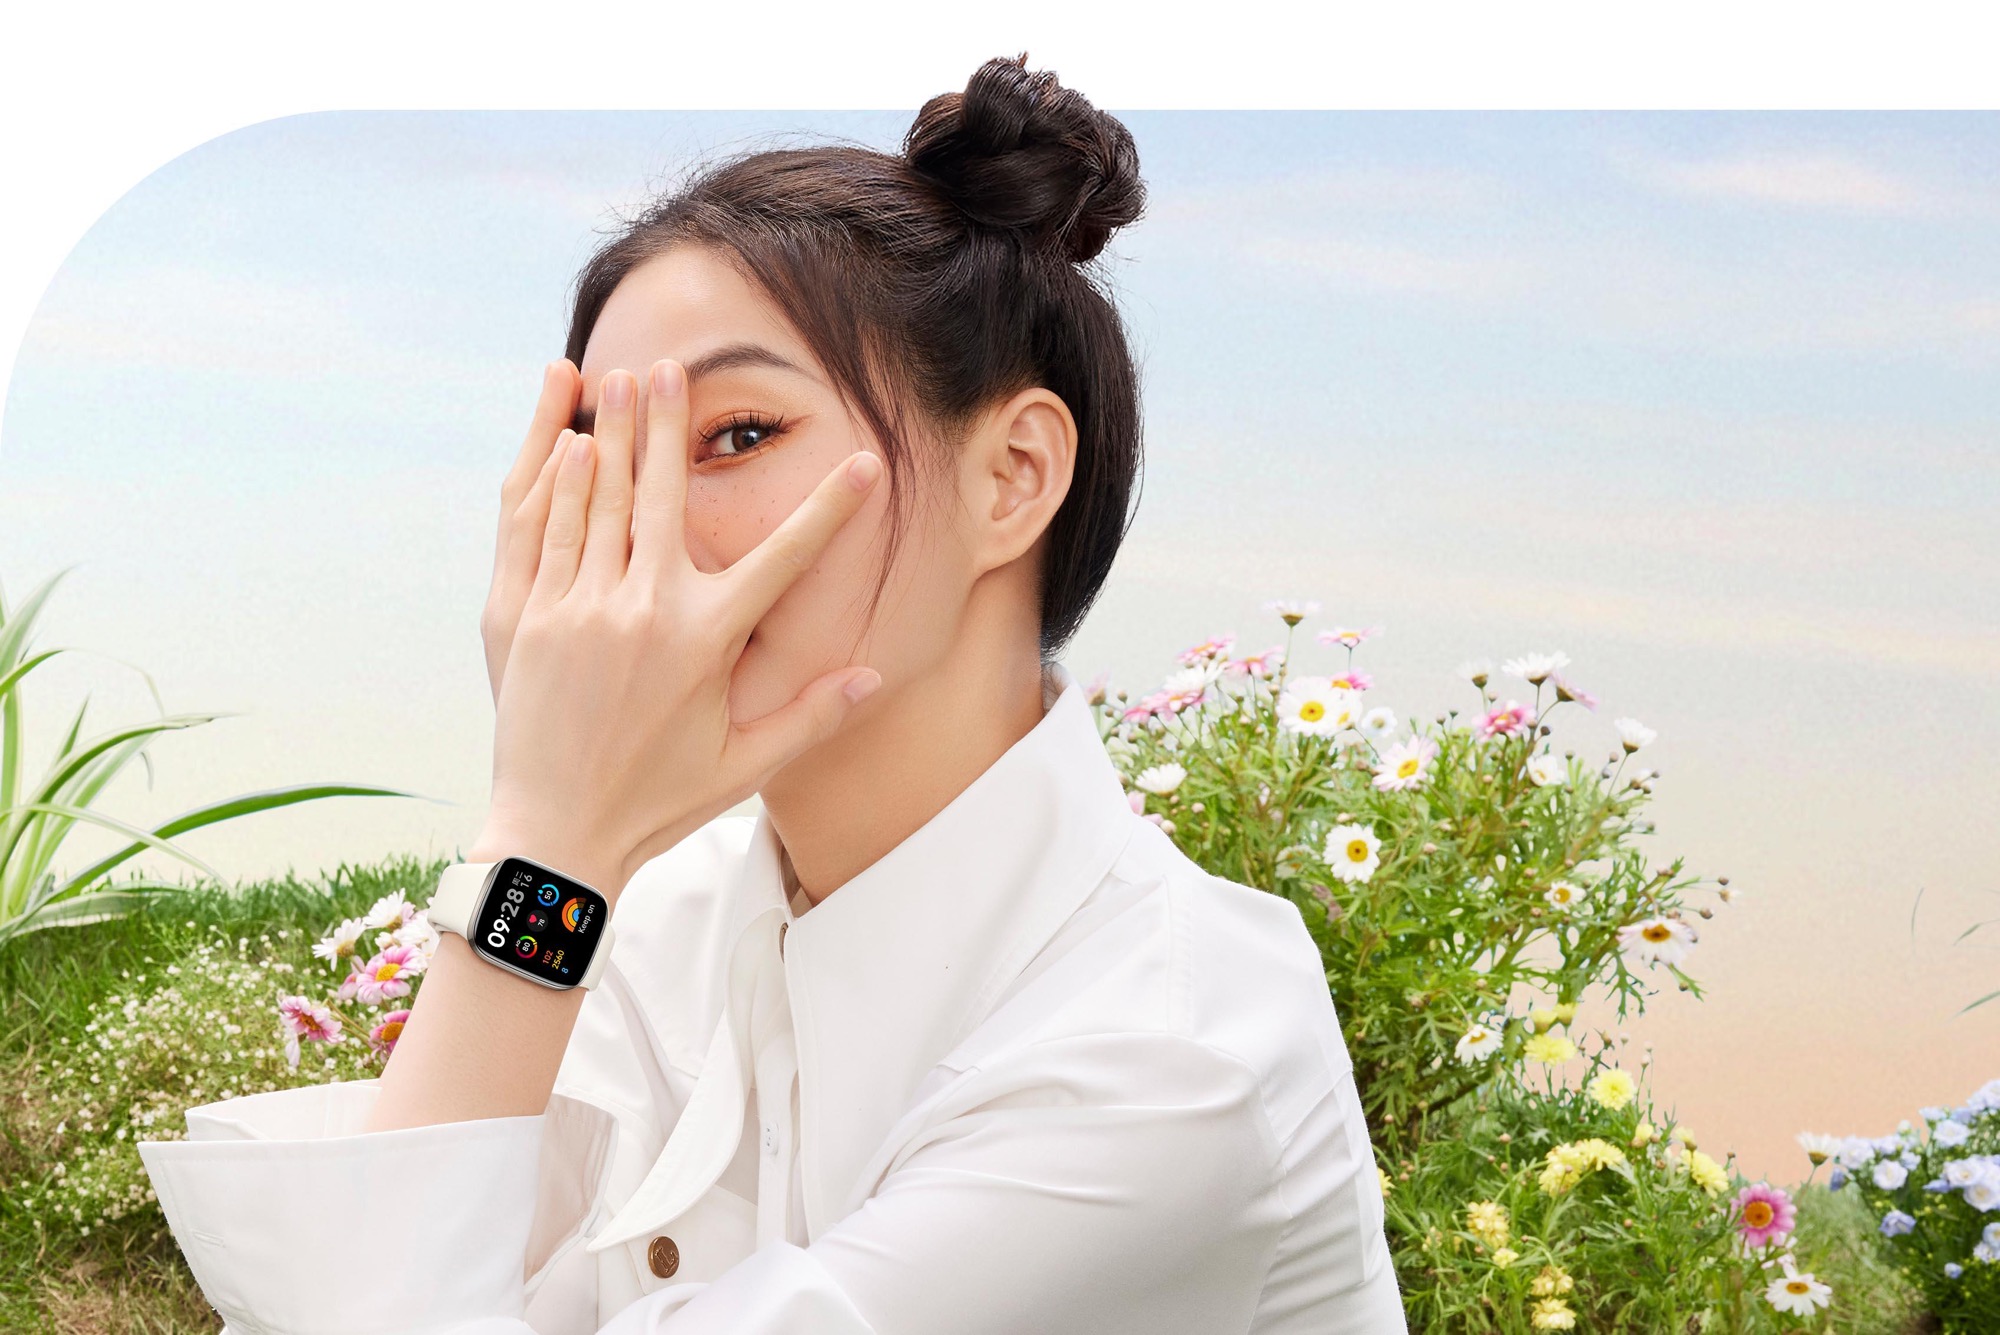 Часы ксиоми редми вотч 3. Сяоми редми вотч 3. Xiaomi watch редми. Смарт-часы Xiaomi Redmi watch 3. Xiaomi watch 3 на женской руке.